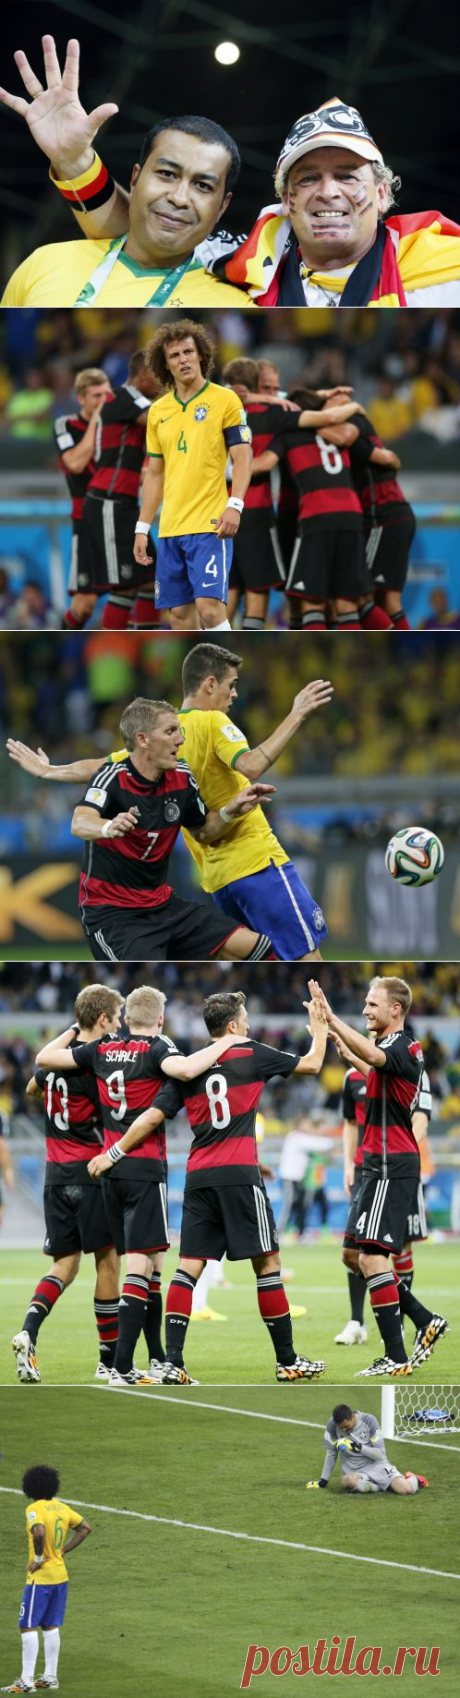 ИТАР-ТАСС: Спорт - Сборная Германии нанесла бразильцам самое крупное поражение в истории ЧМ и вышла в финал